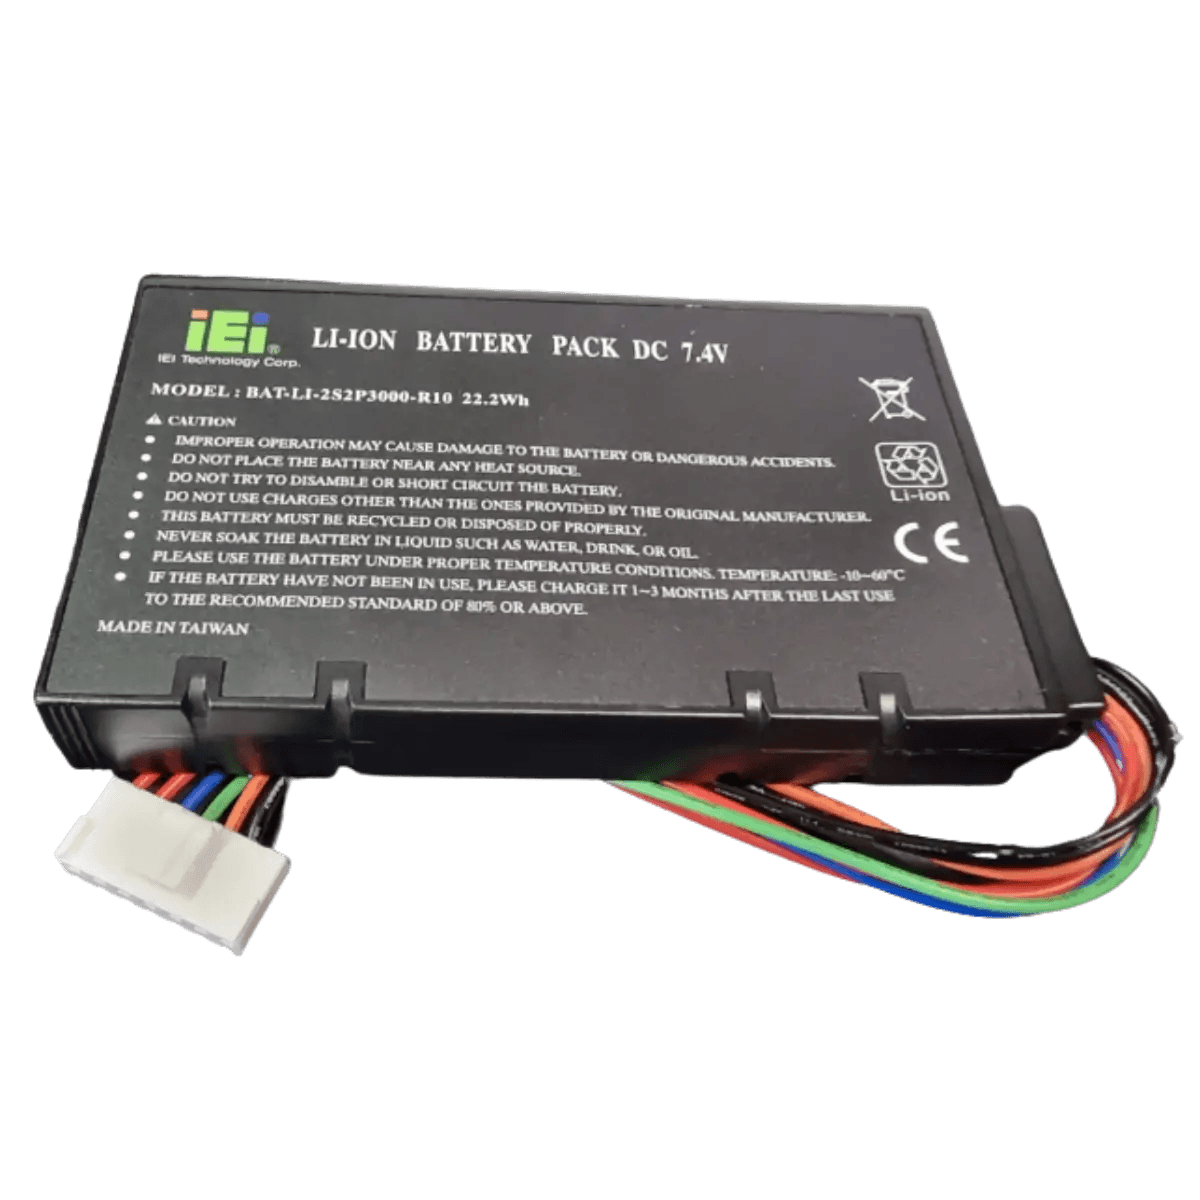 Batterie pack BAT-LI-2S2P3000-R10 7.4v